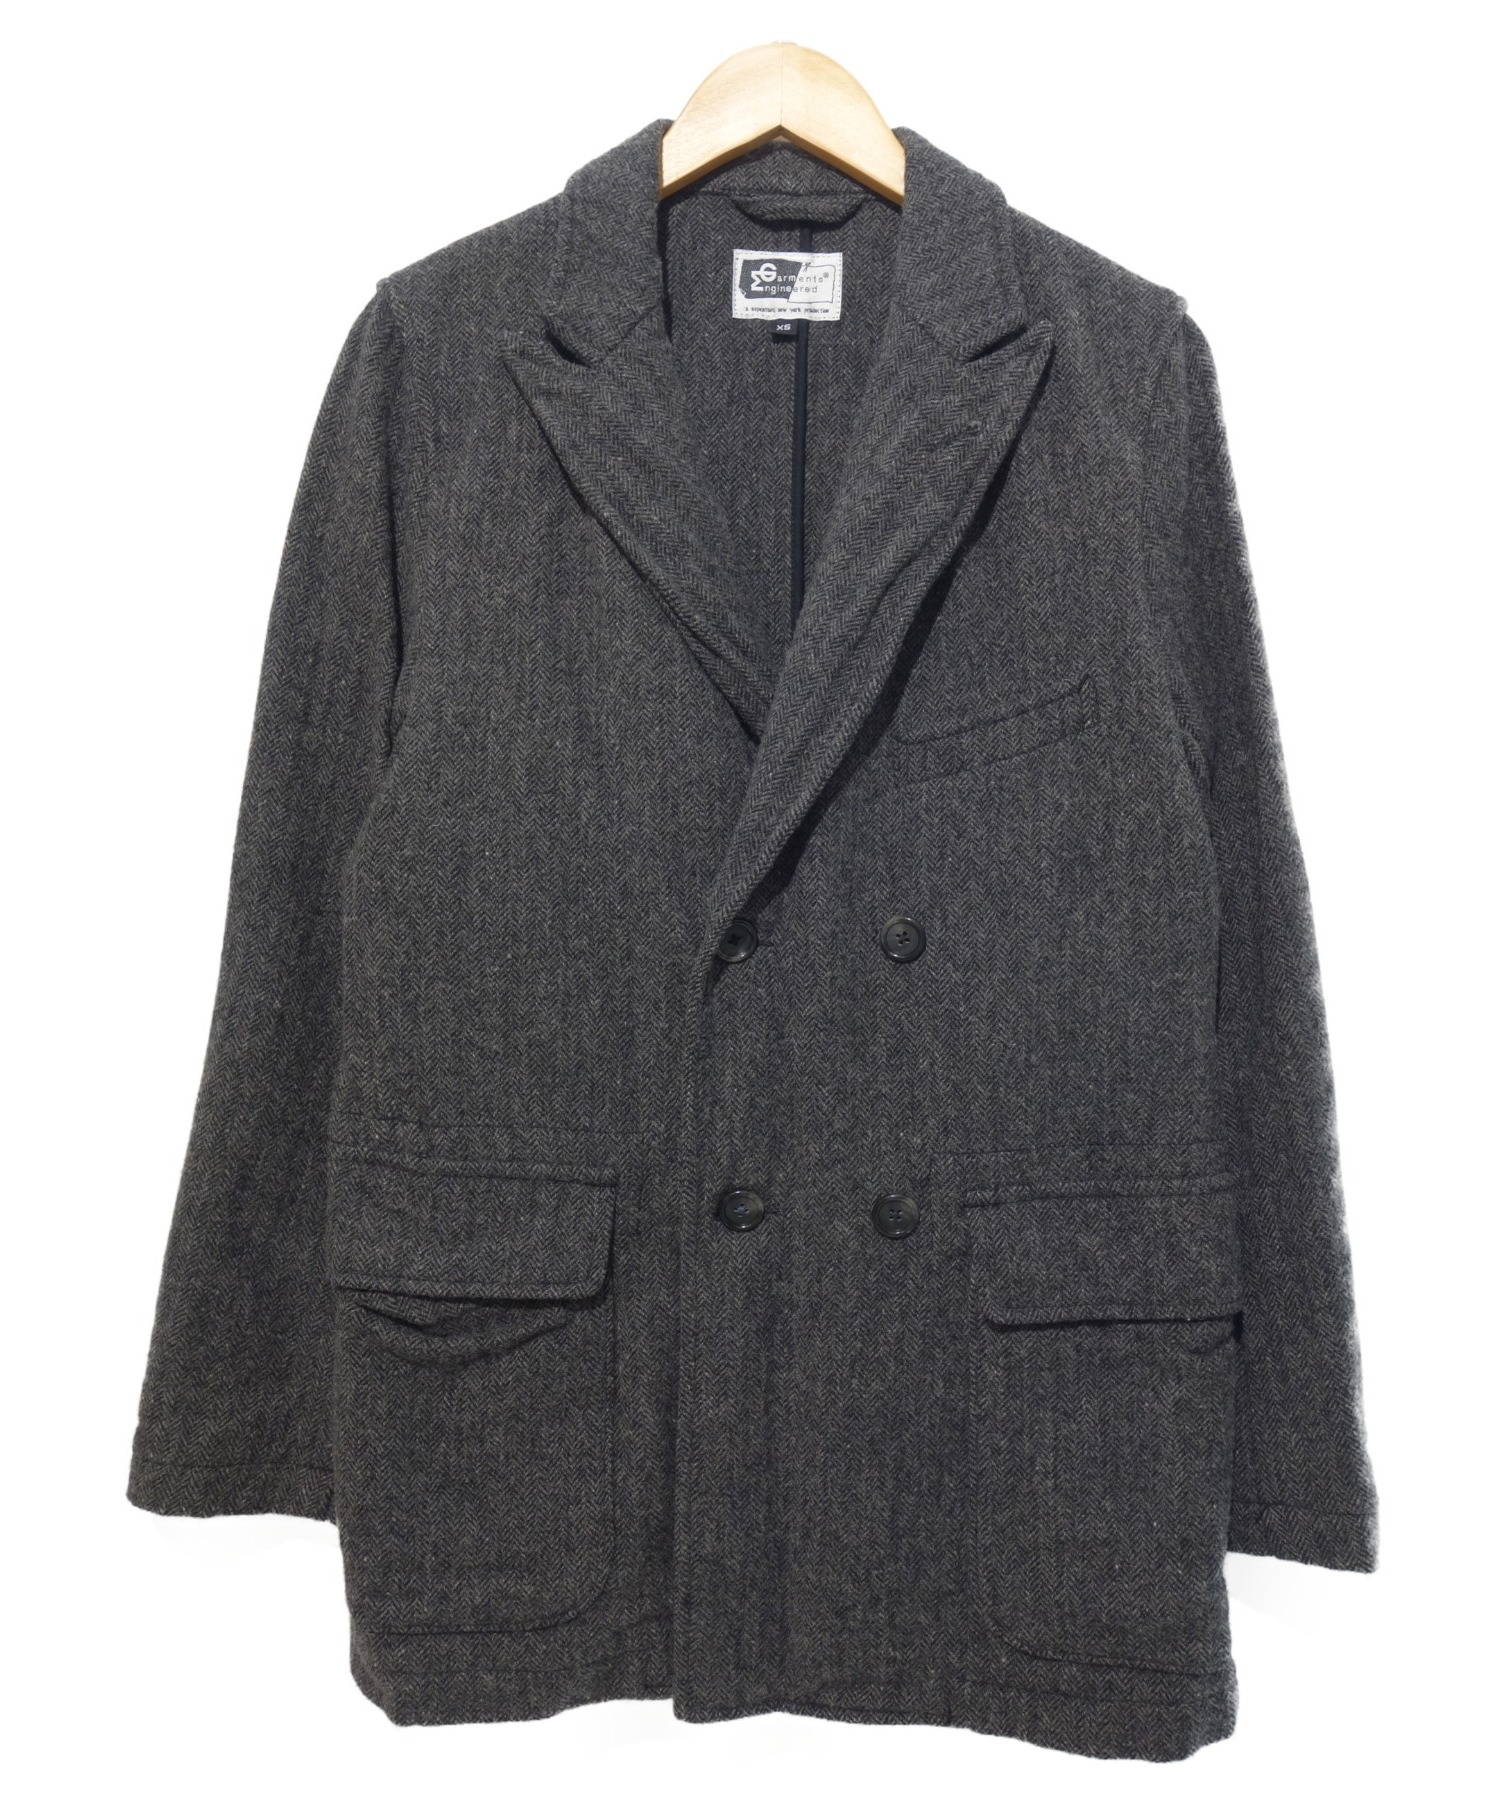 Engineered Garments (エンジニアドガーメンツ) Tweed Newport Jacket ニューポートジャケット グレー  サイズ:XS